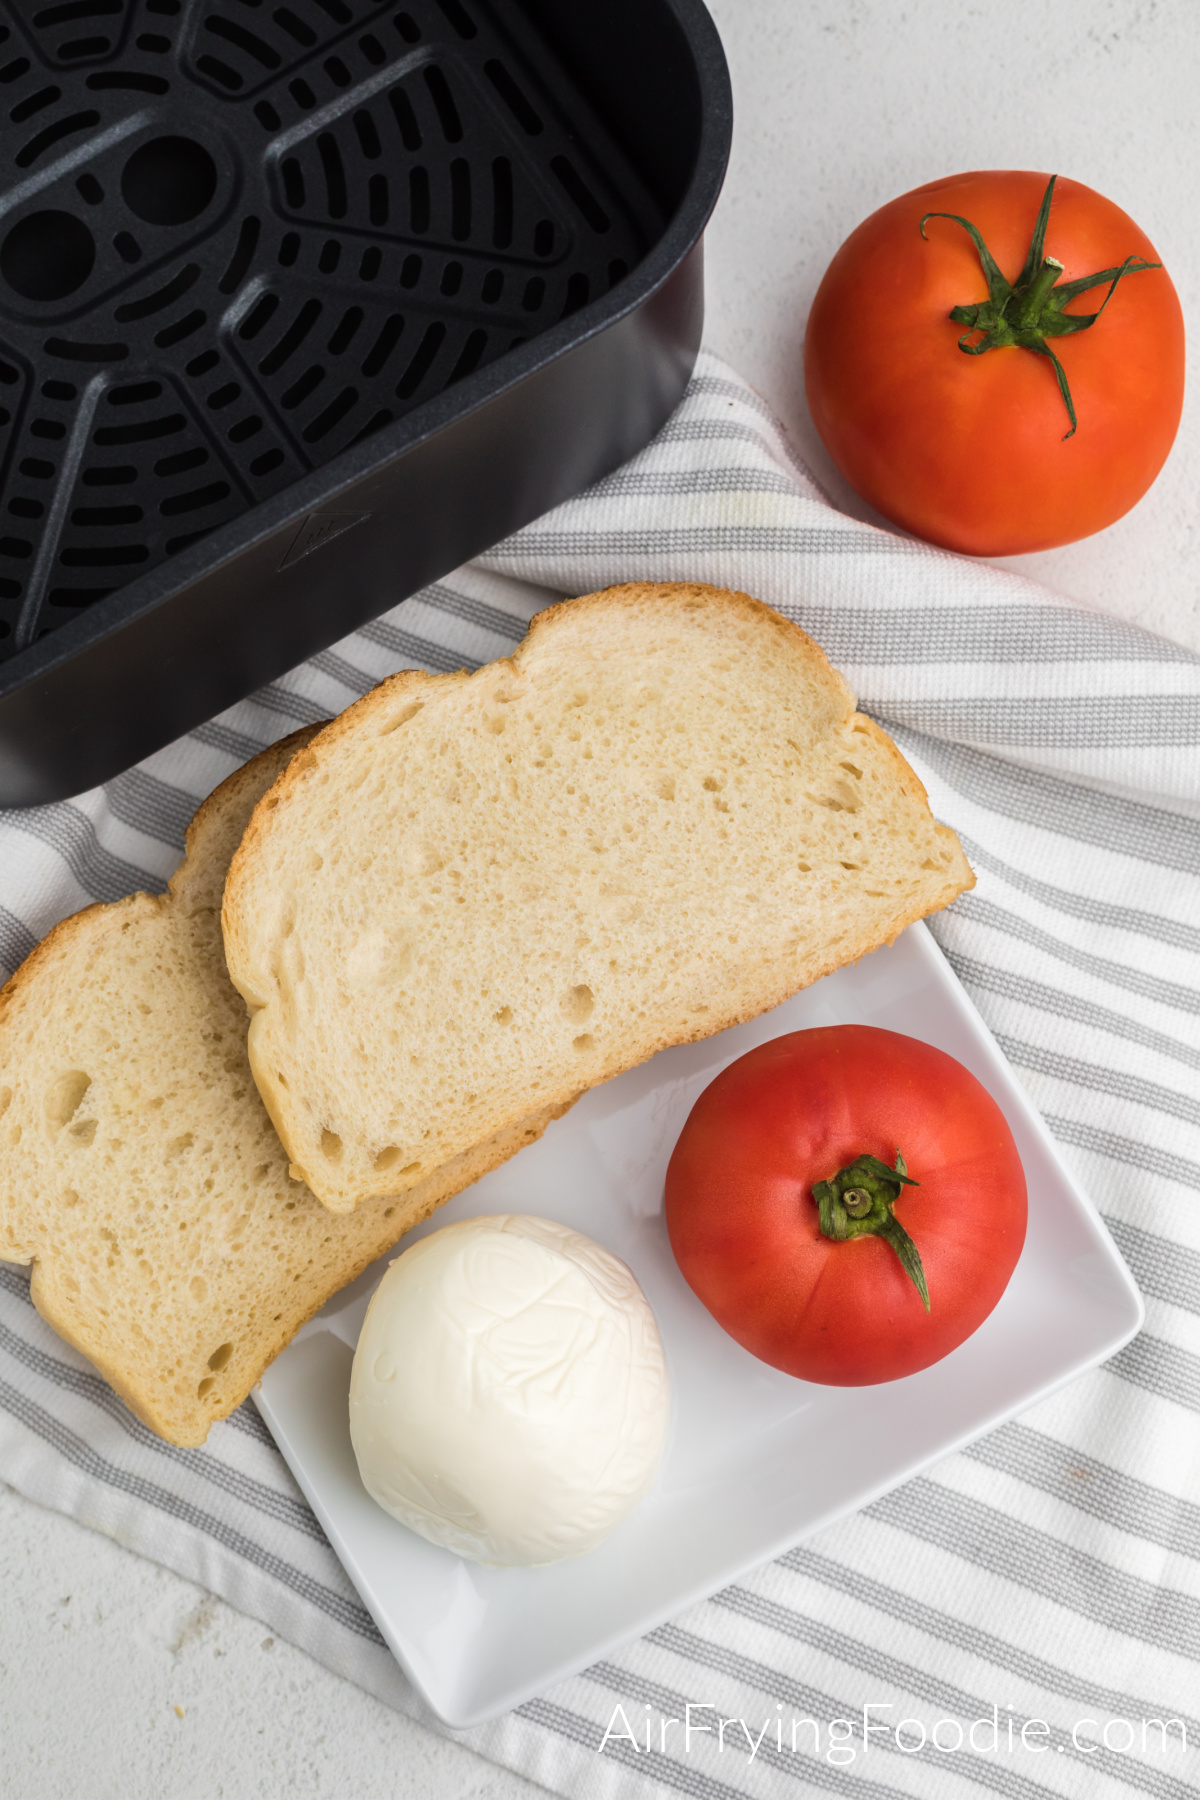 Mozzarella cheese, tomato, and bread on a white plate.